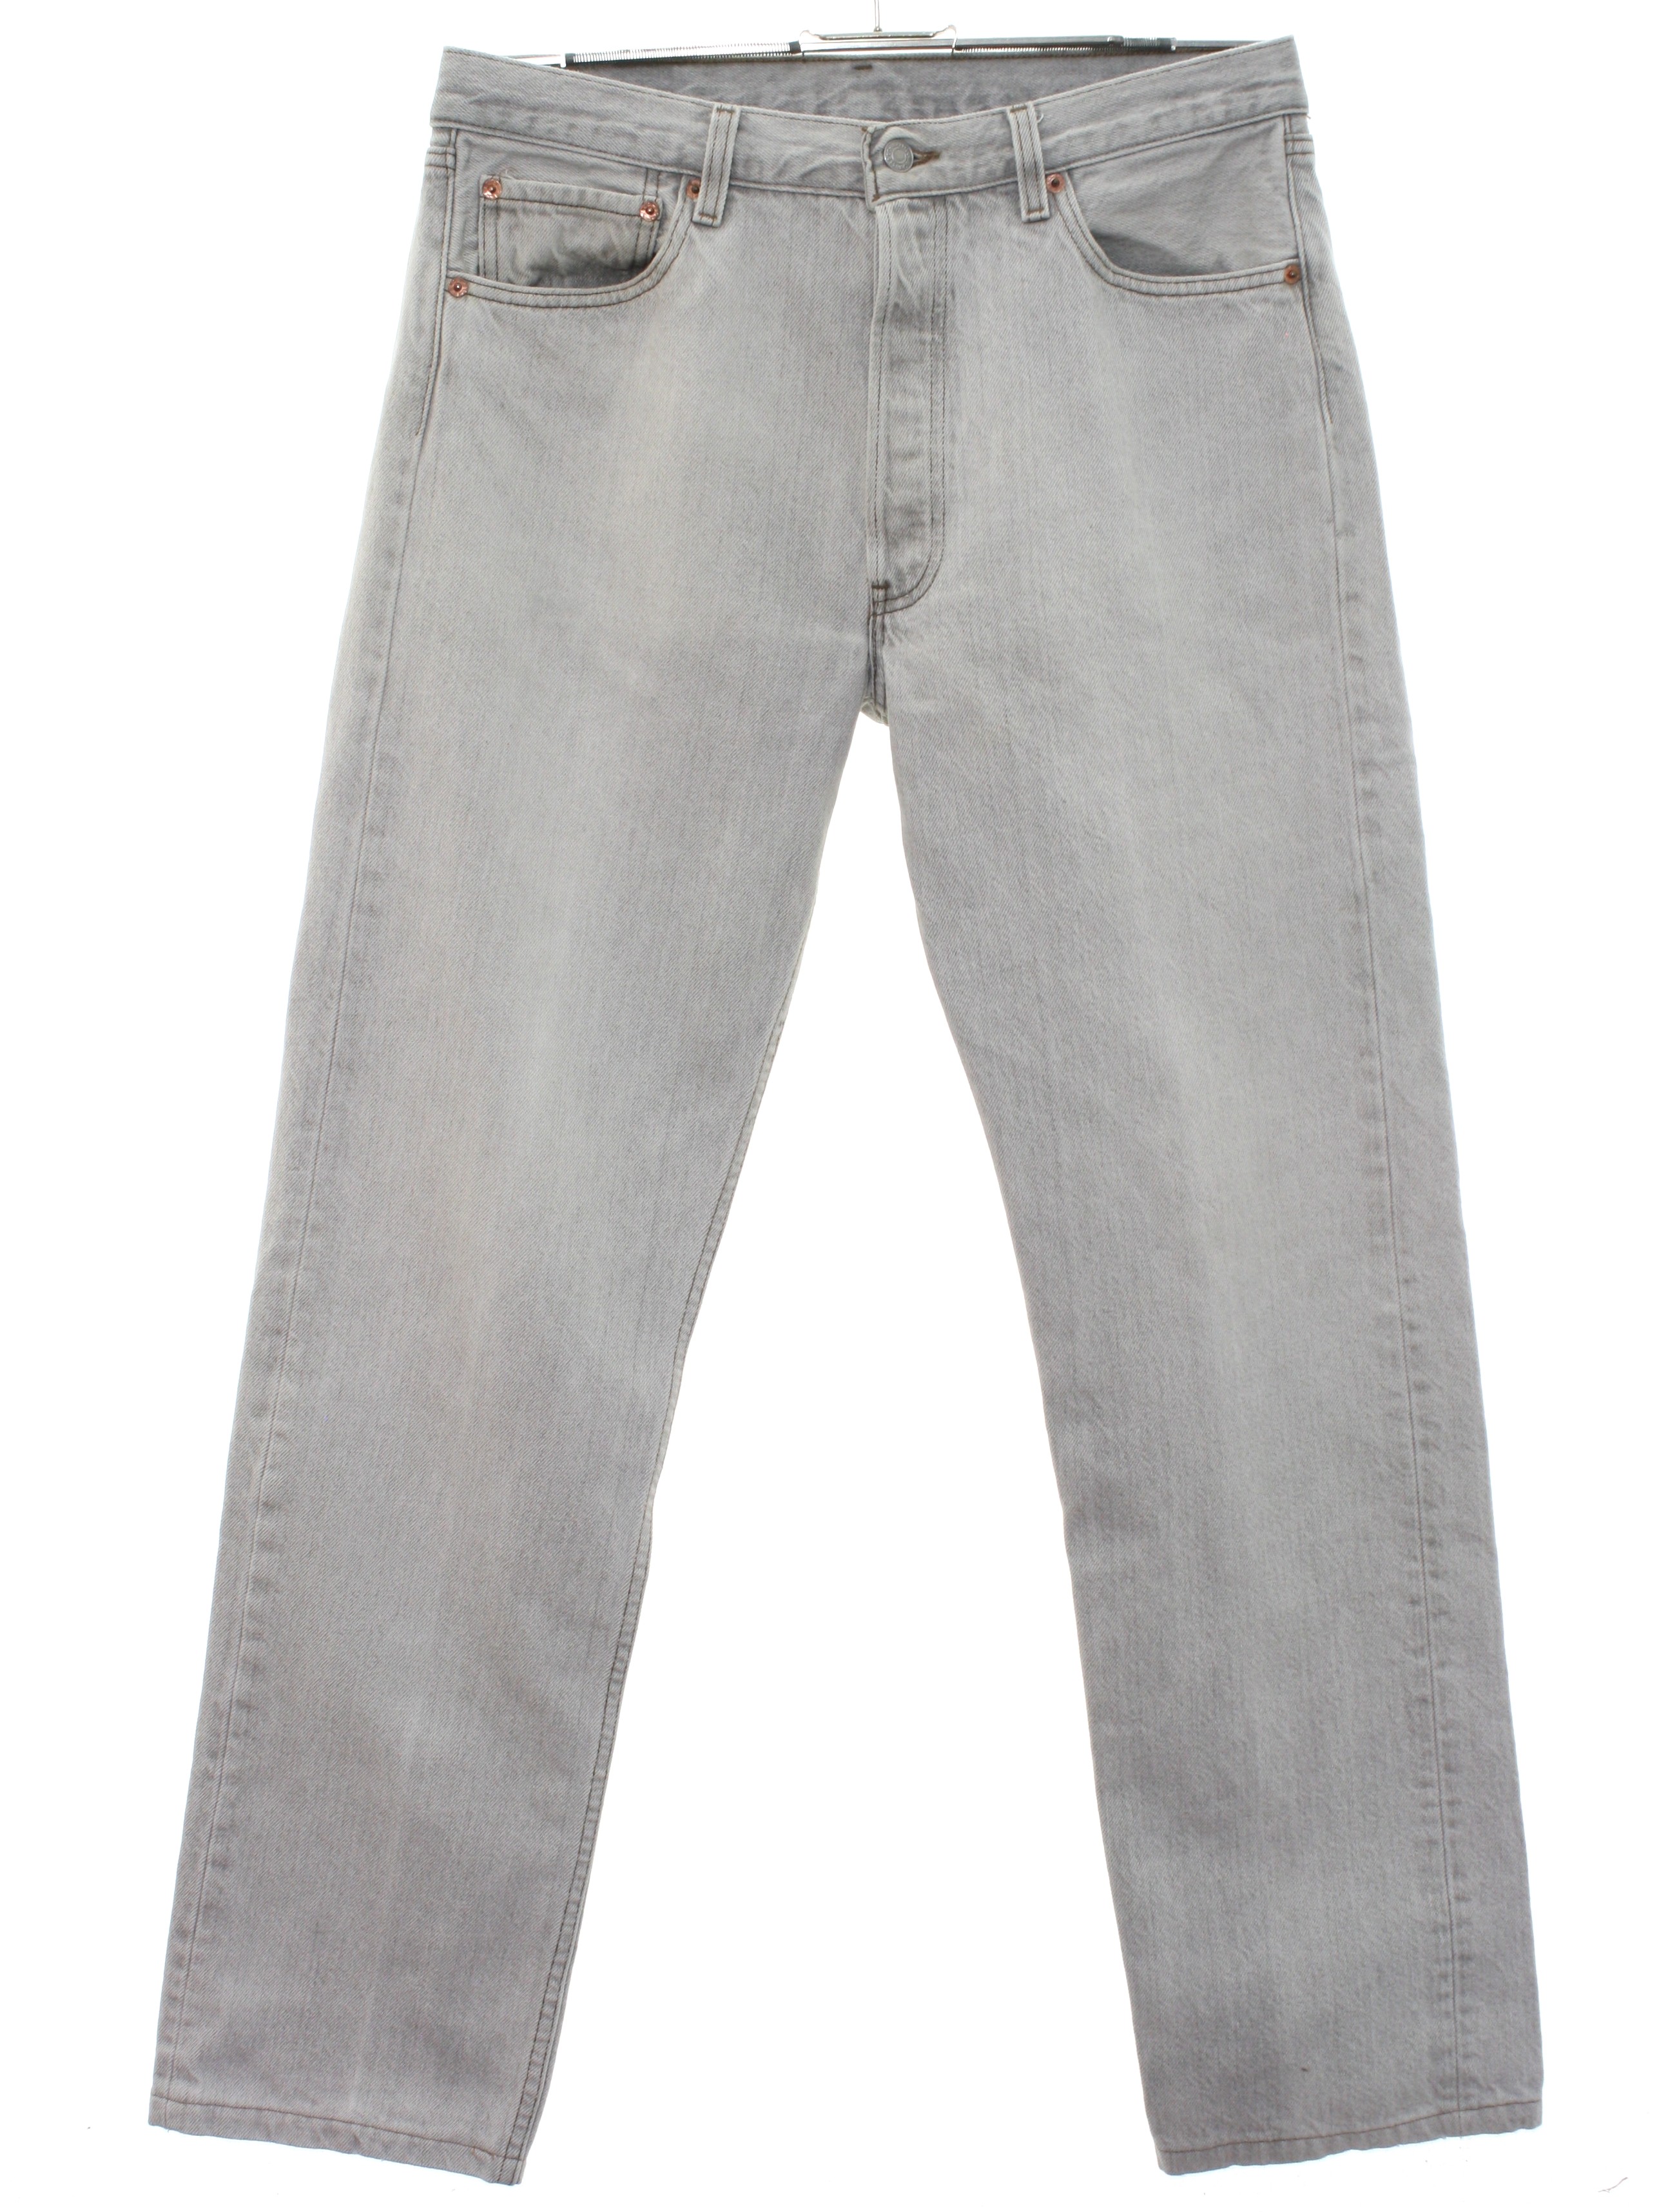 Vintage Levis 501 1980s Pants: 80s -Levis 501- Mens stone washed light ...